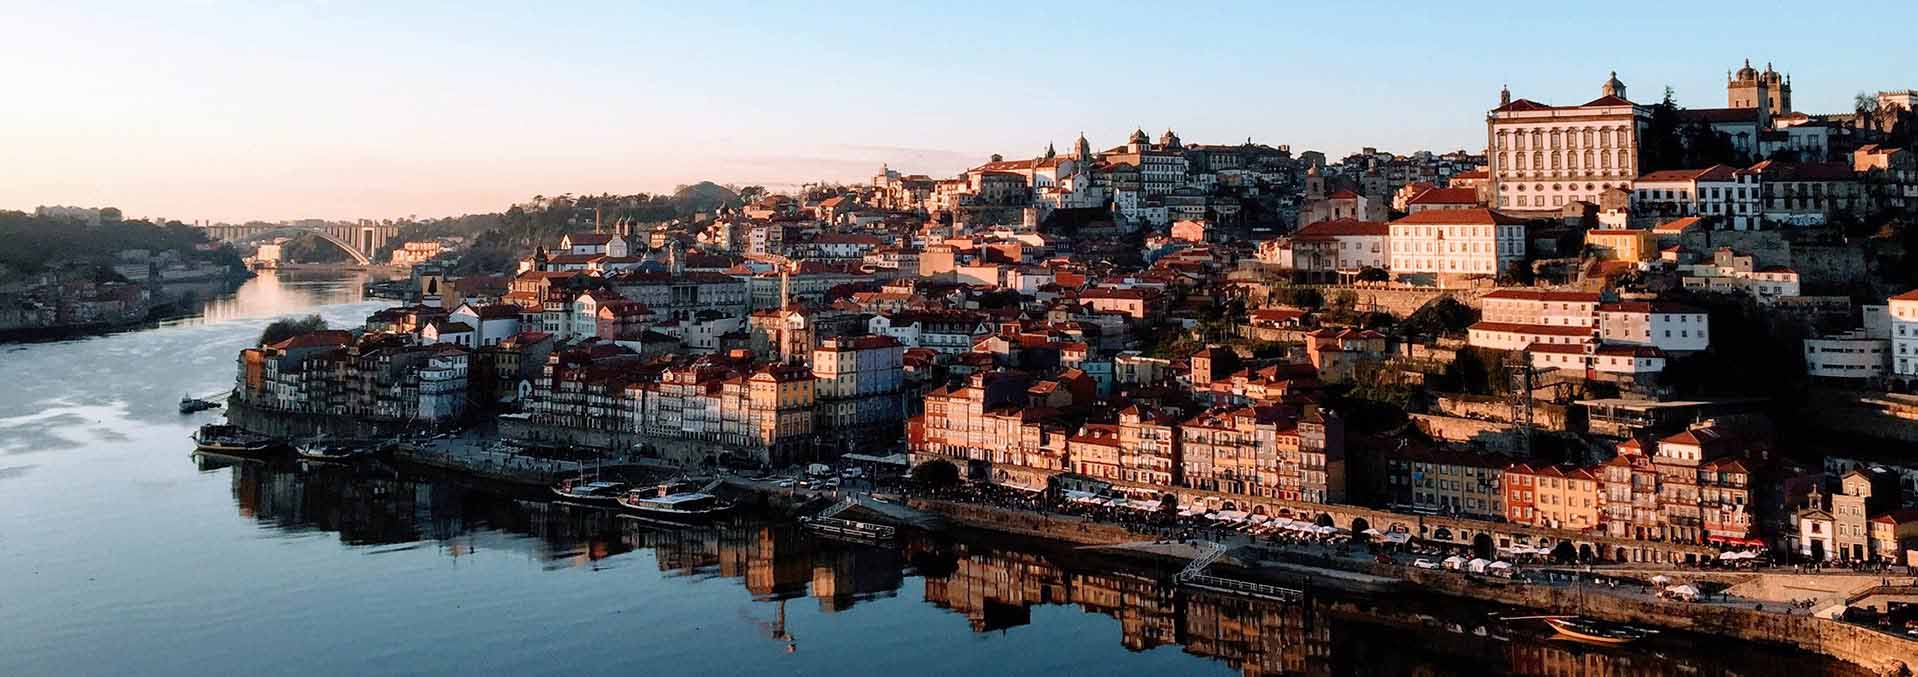 Trabalhar no Porto